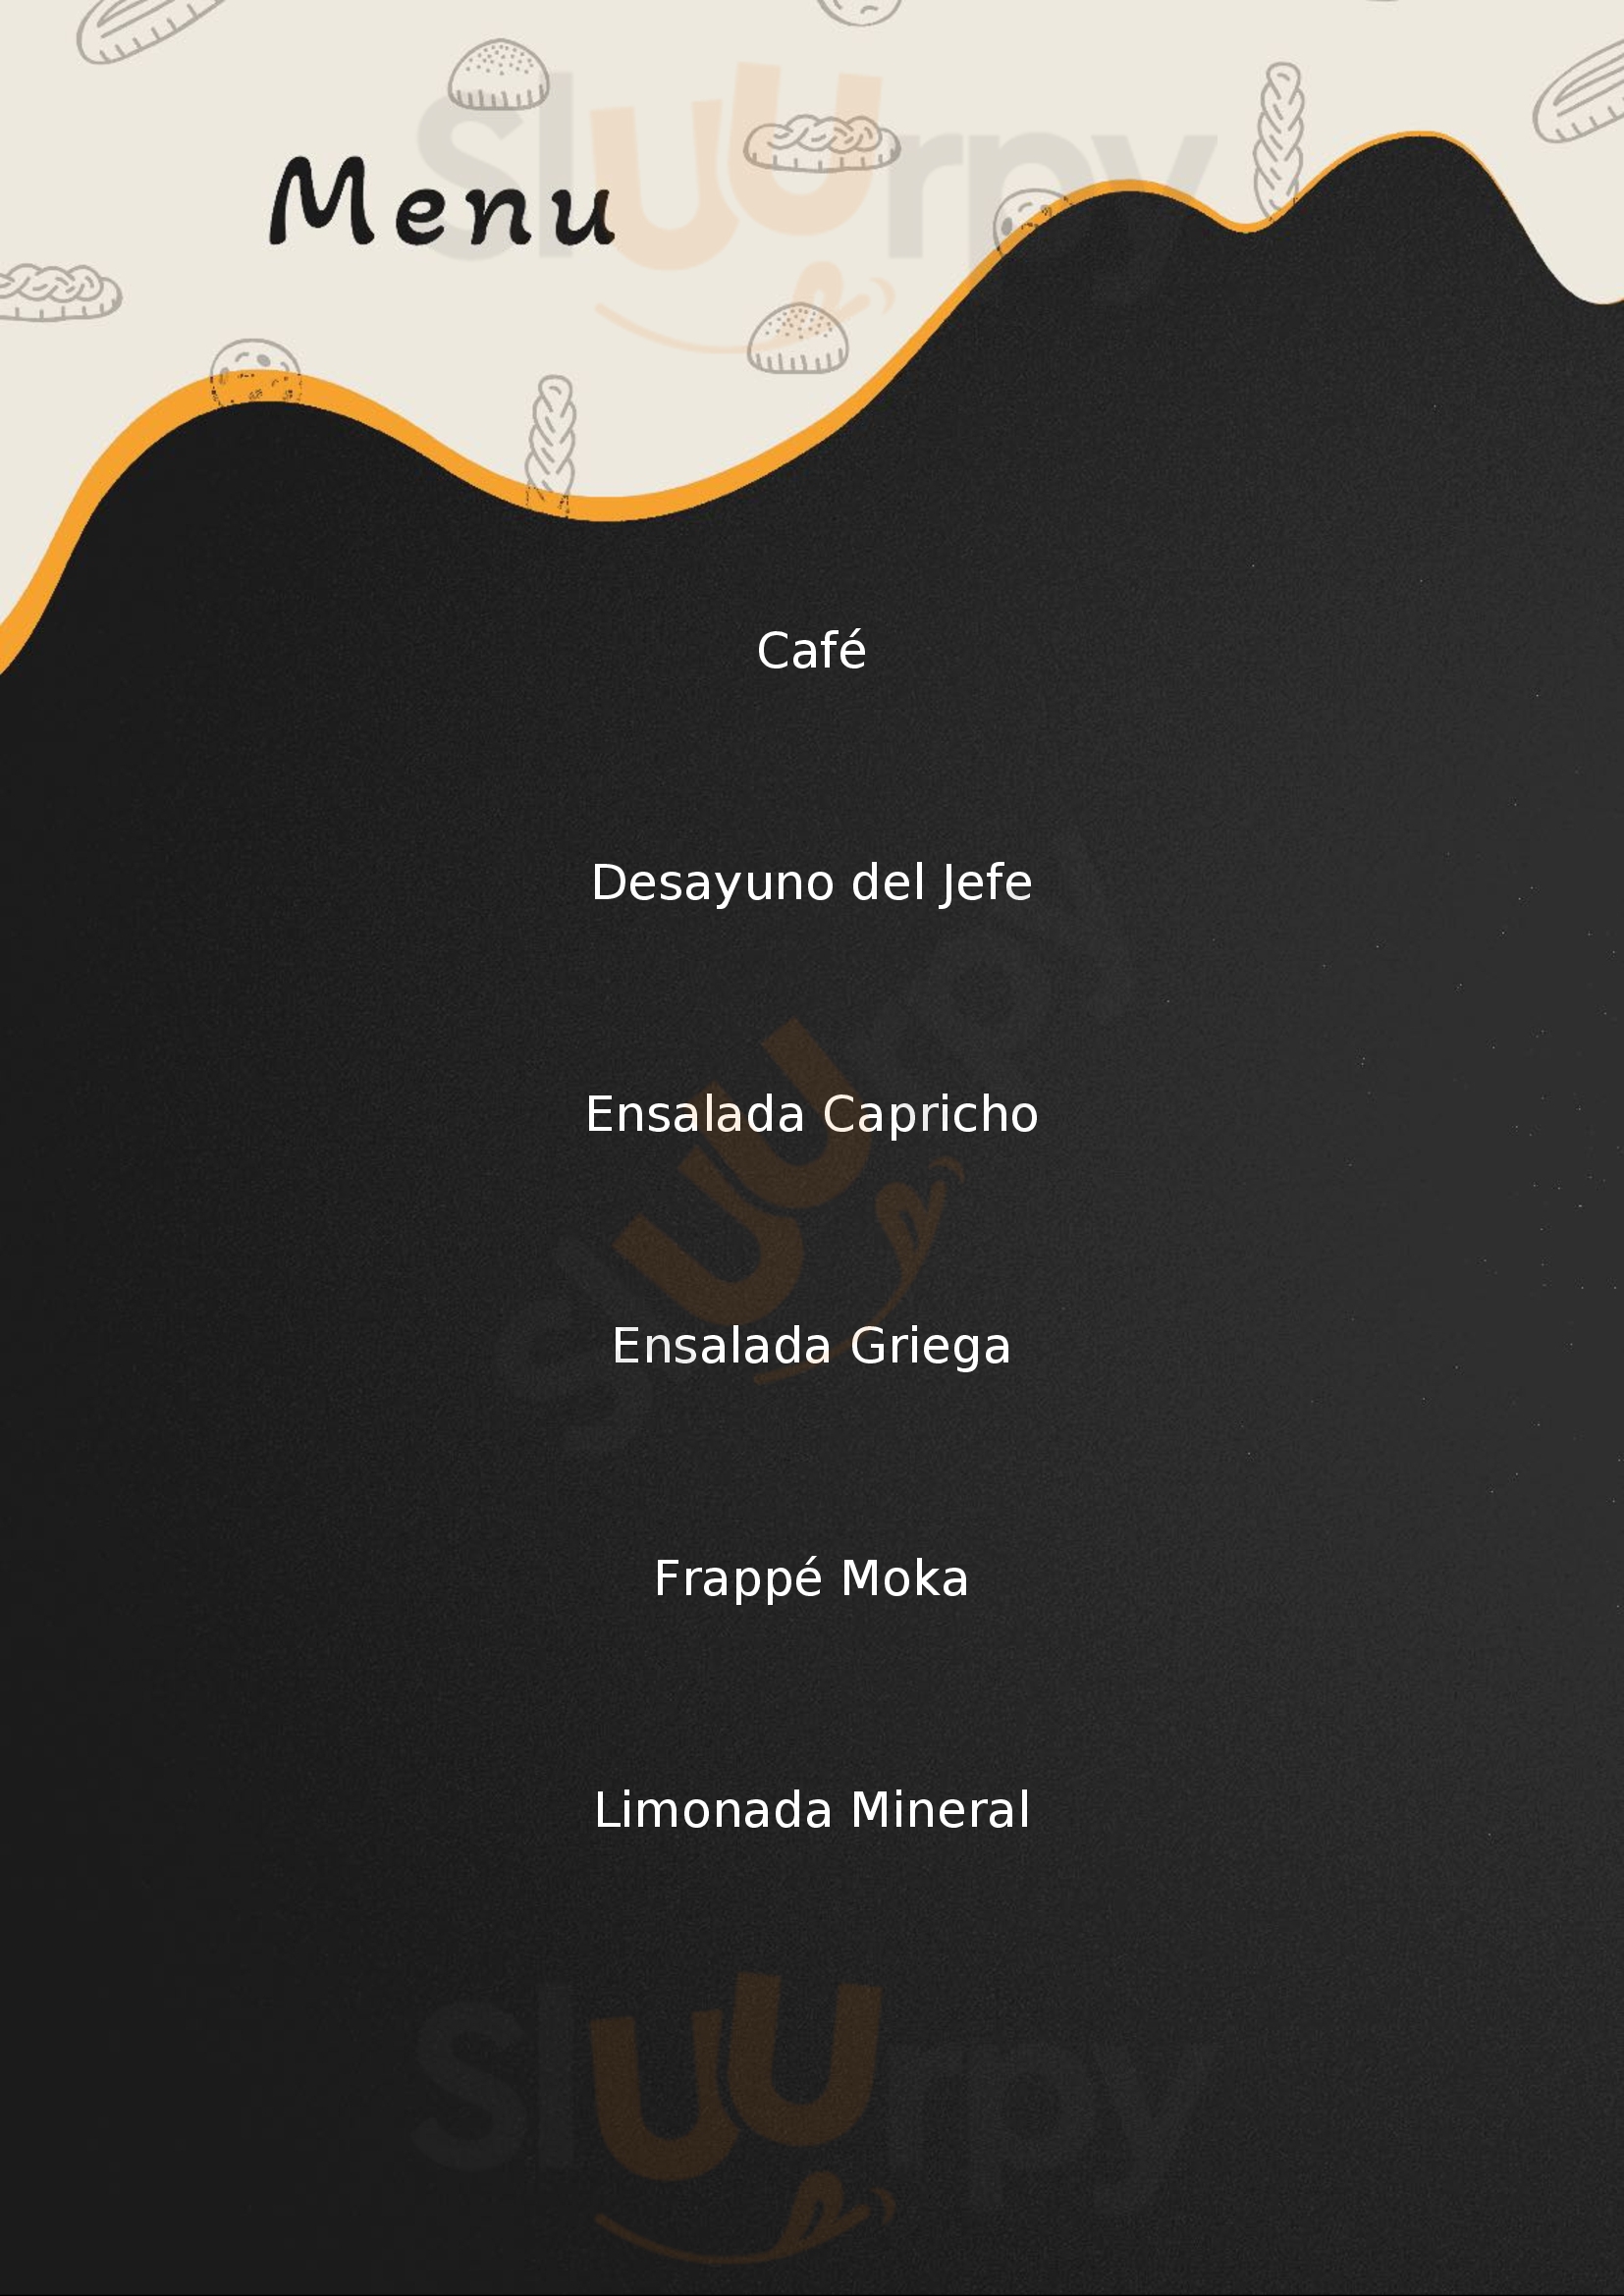 Metro Cafe Mexicali Menu - 1